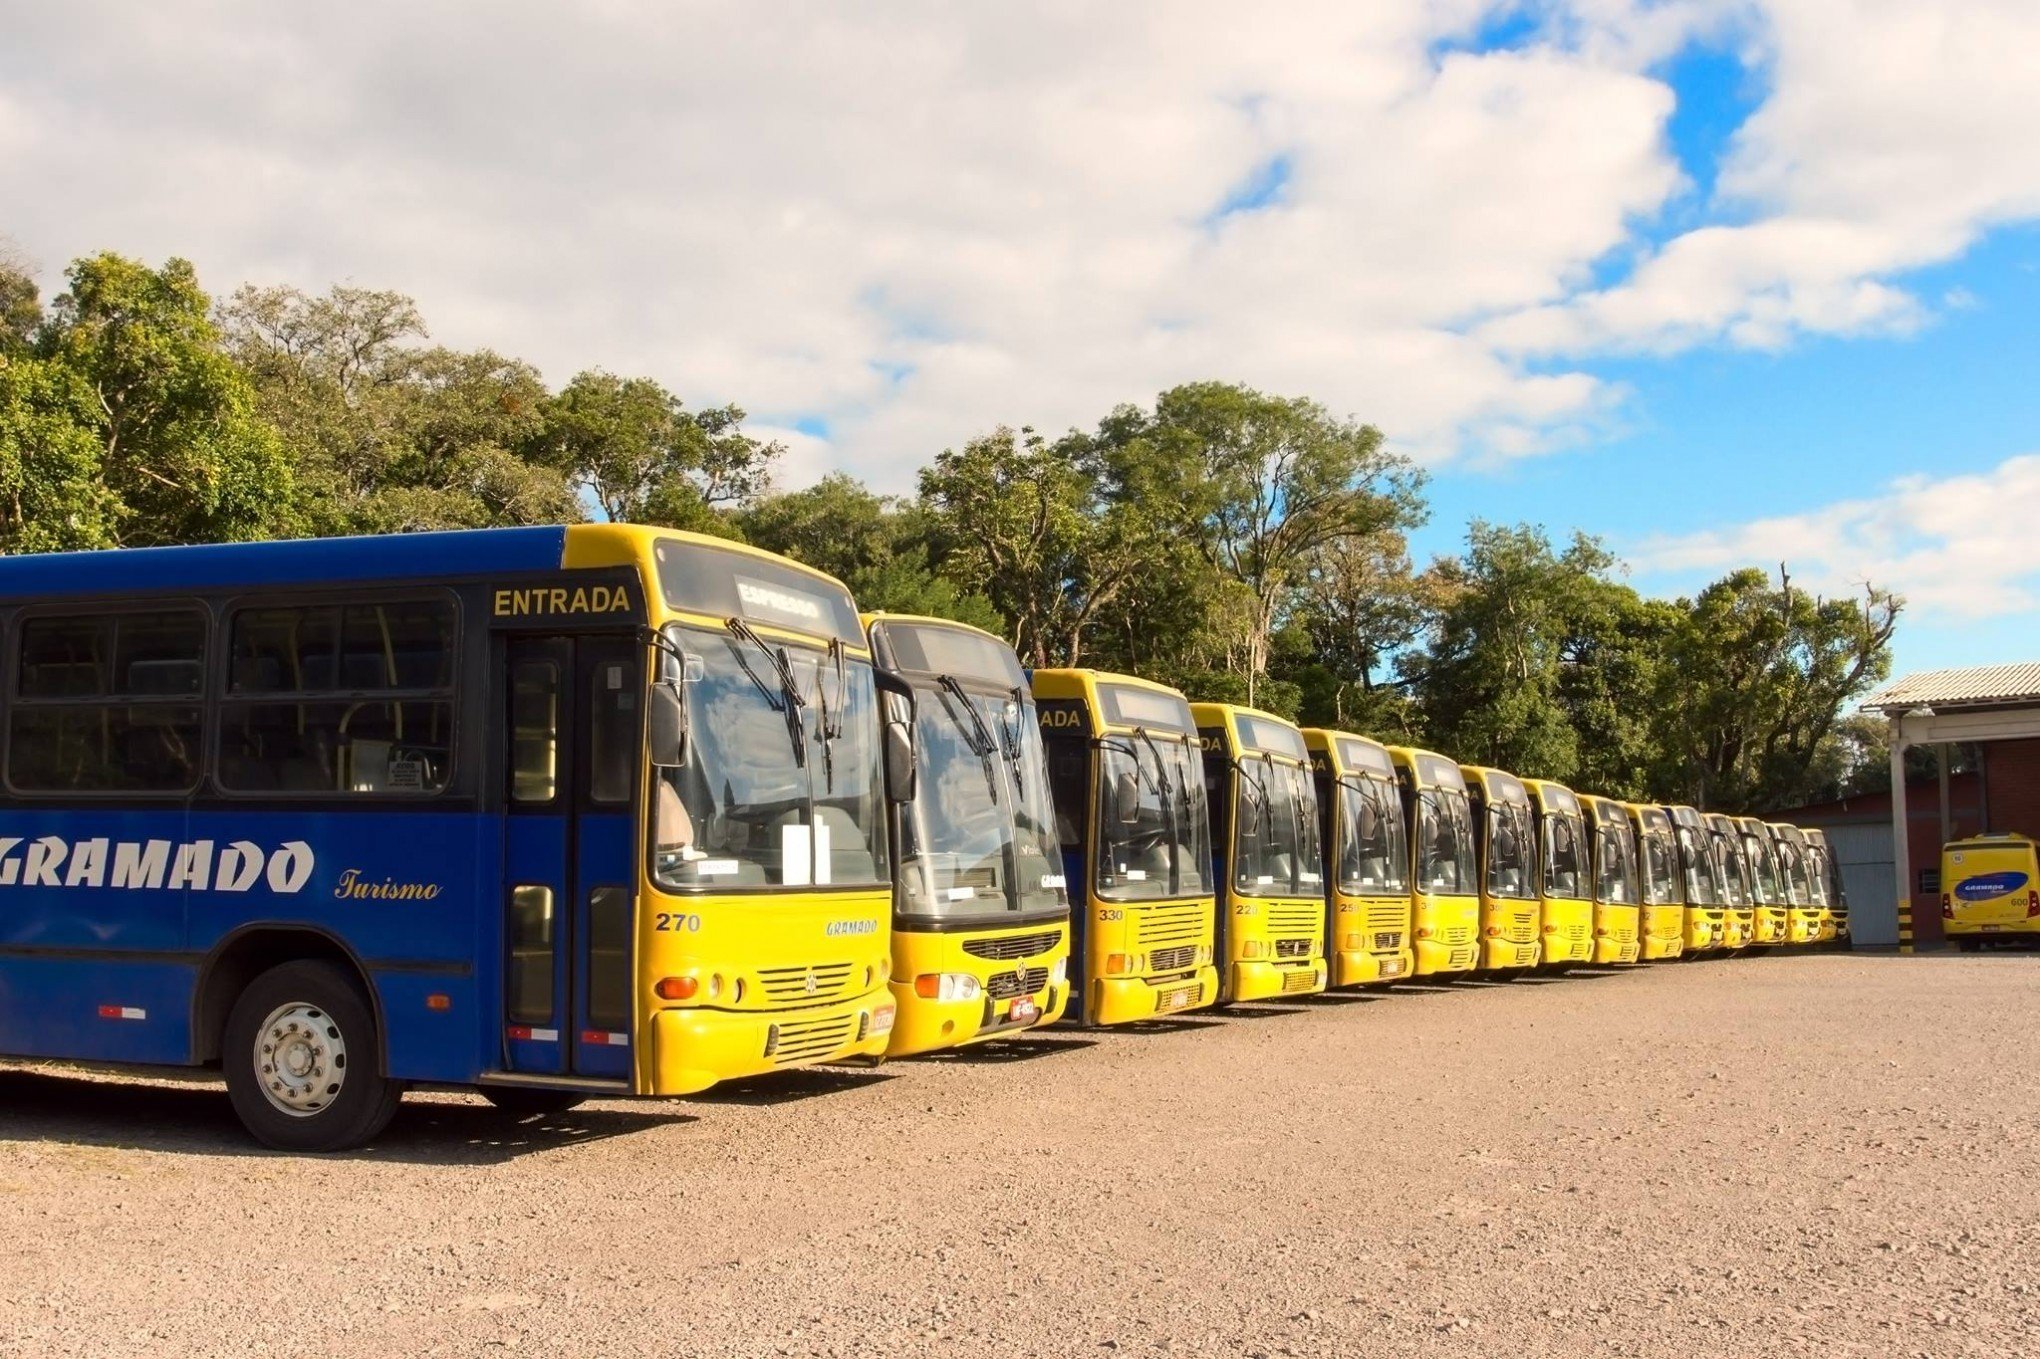 Com feriado, transporte público terá mudança nos horários em Gramado; veja o funcionamento